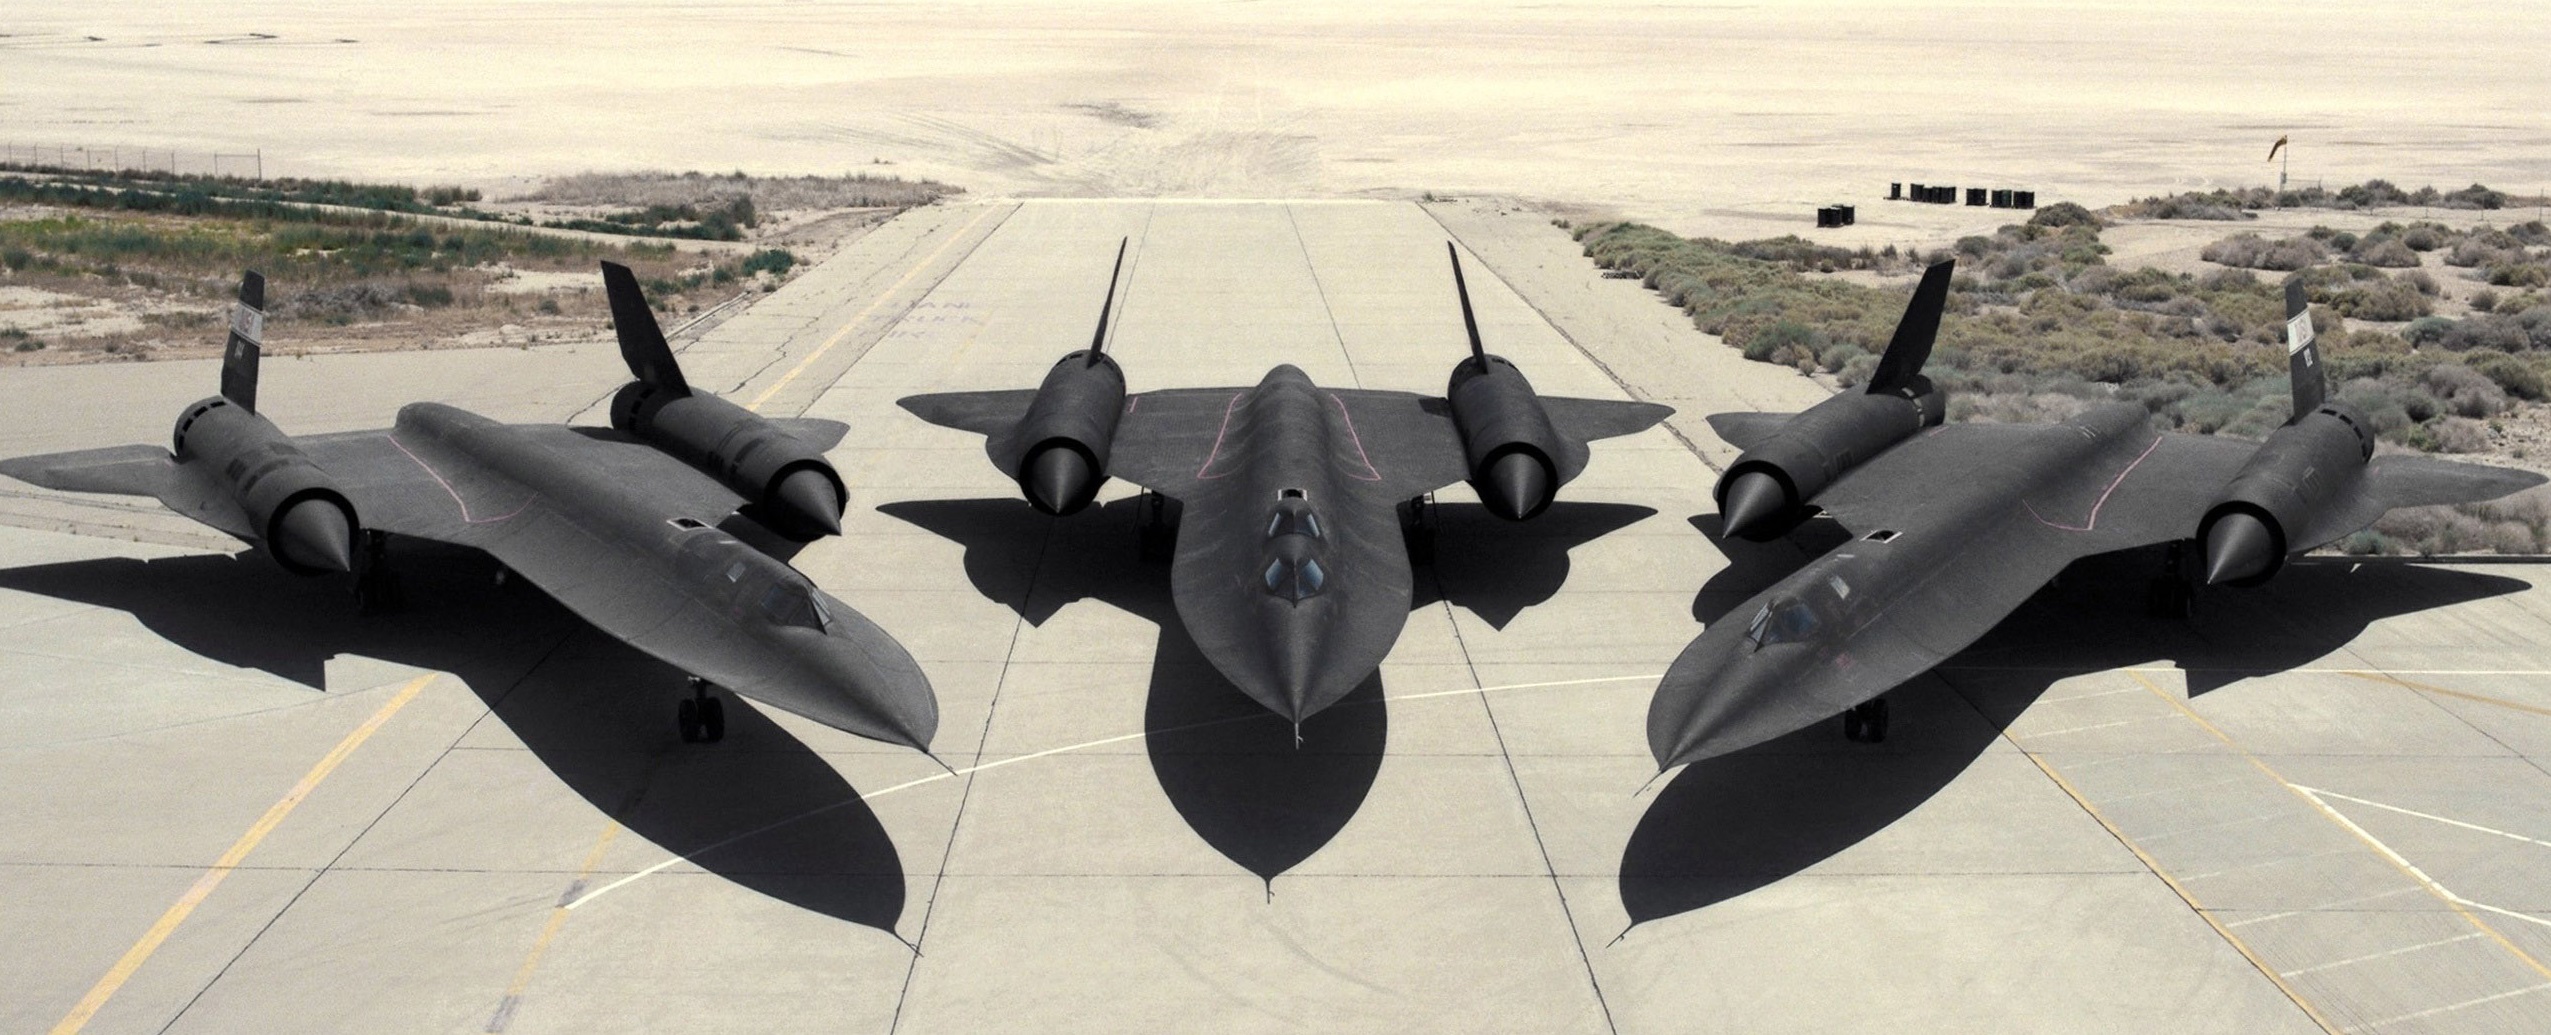 Three SR-71 Blackbirds